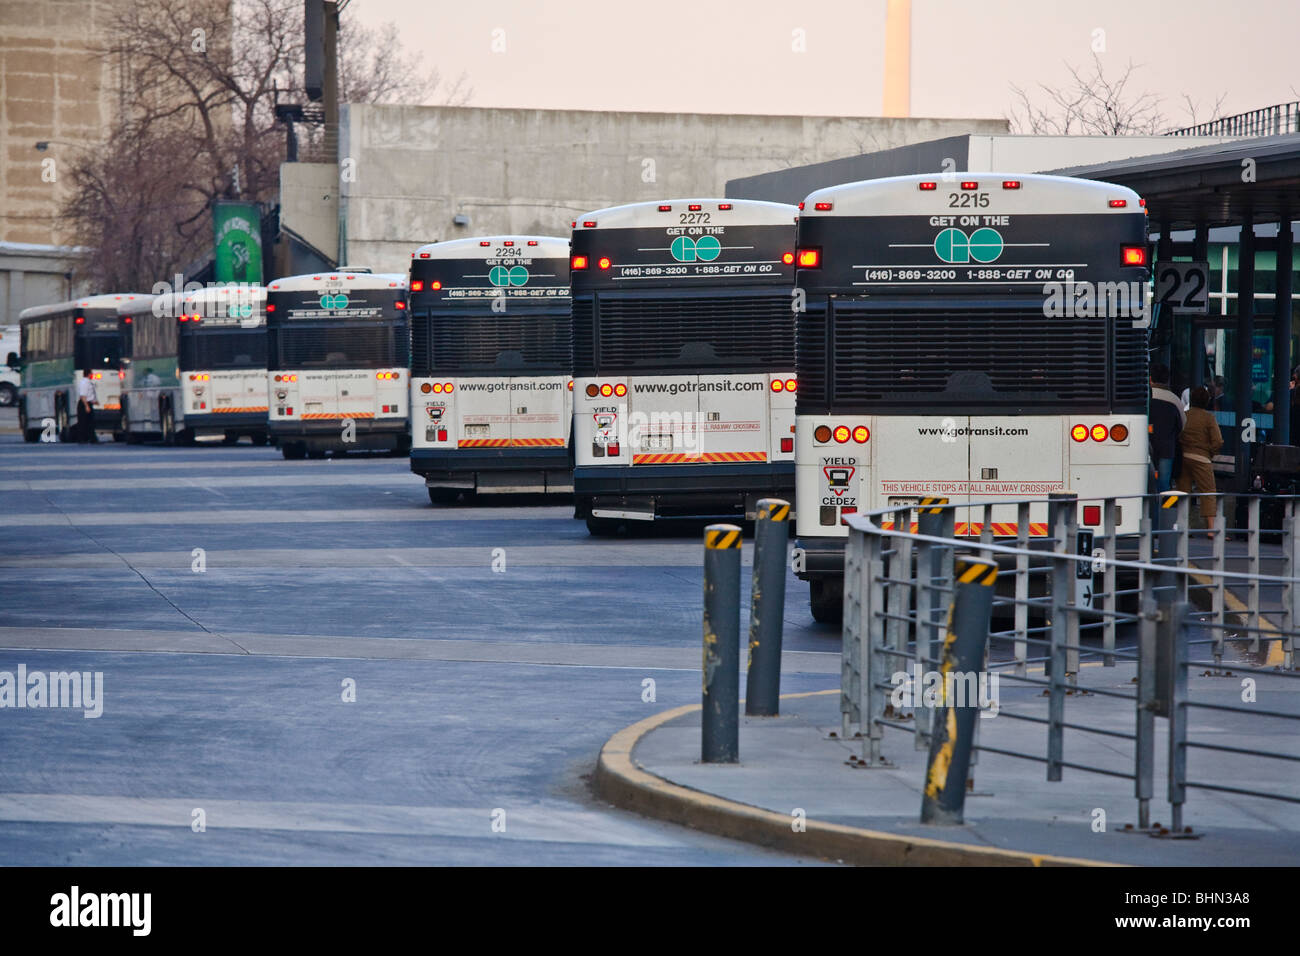 GoTransit autobuses del servicio de transporte público en la Union Station, Toronto, Canadá Foto de stock